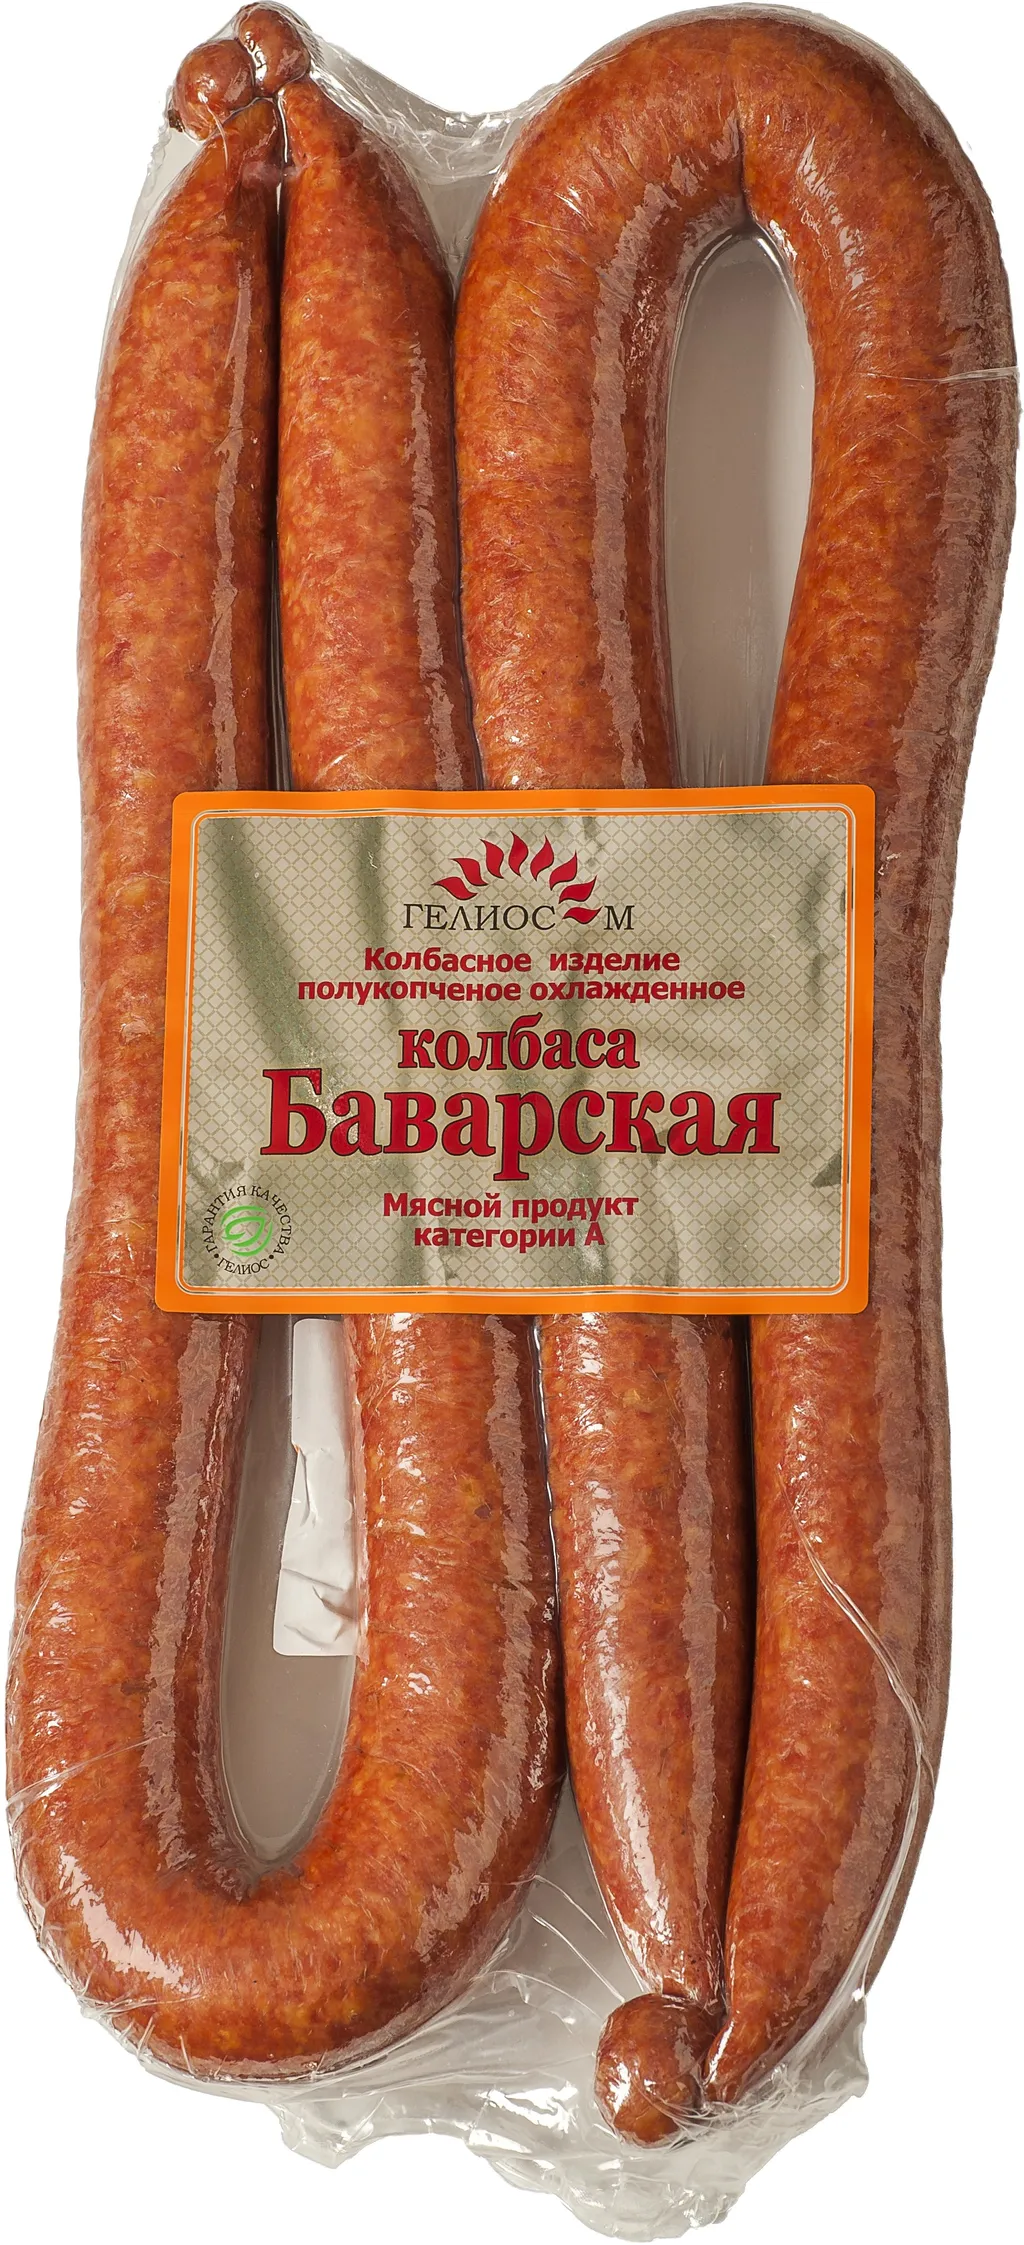 колбасная продукция, мясные деликатесы в Липецке и Липецкой области